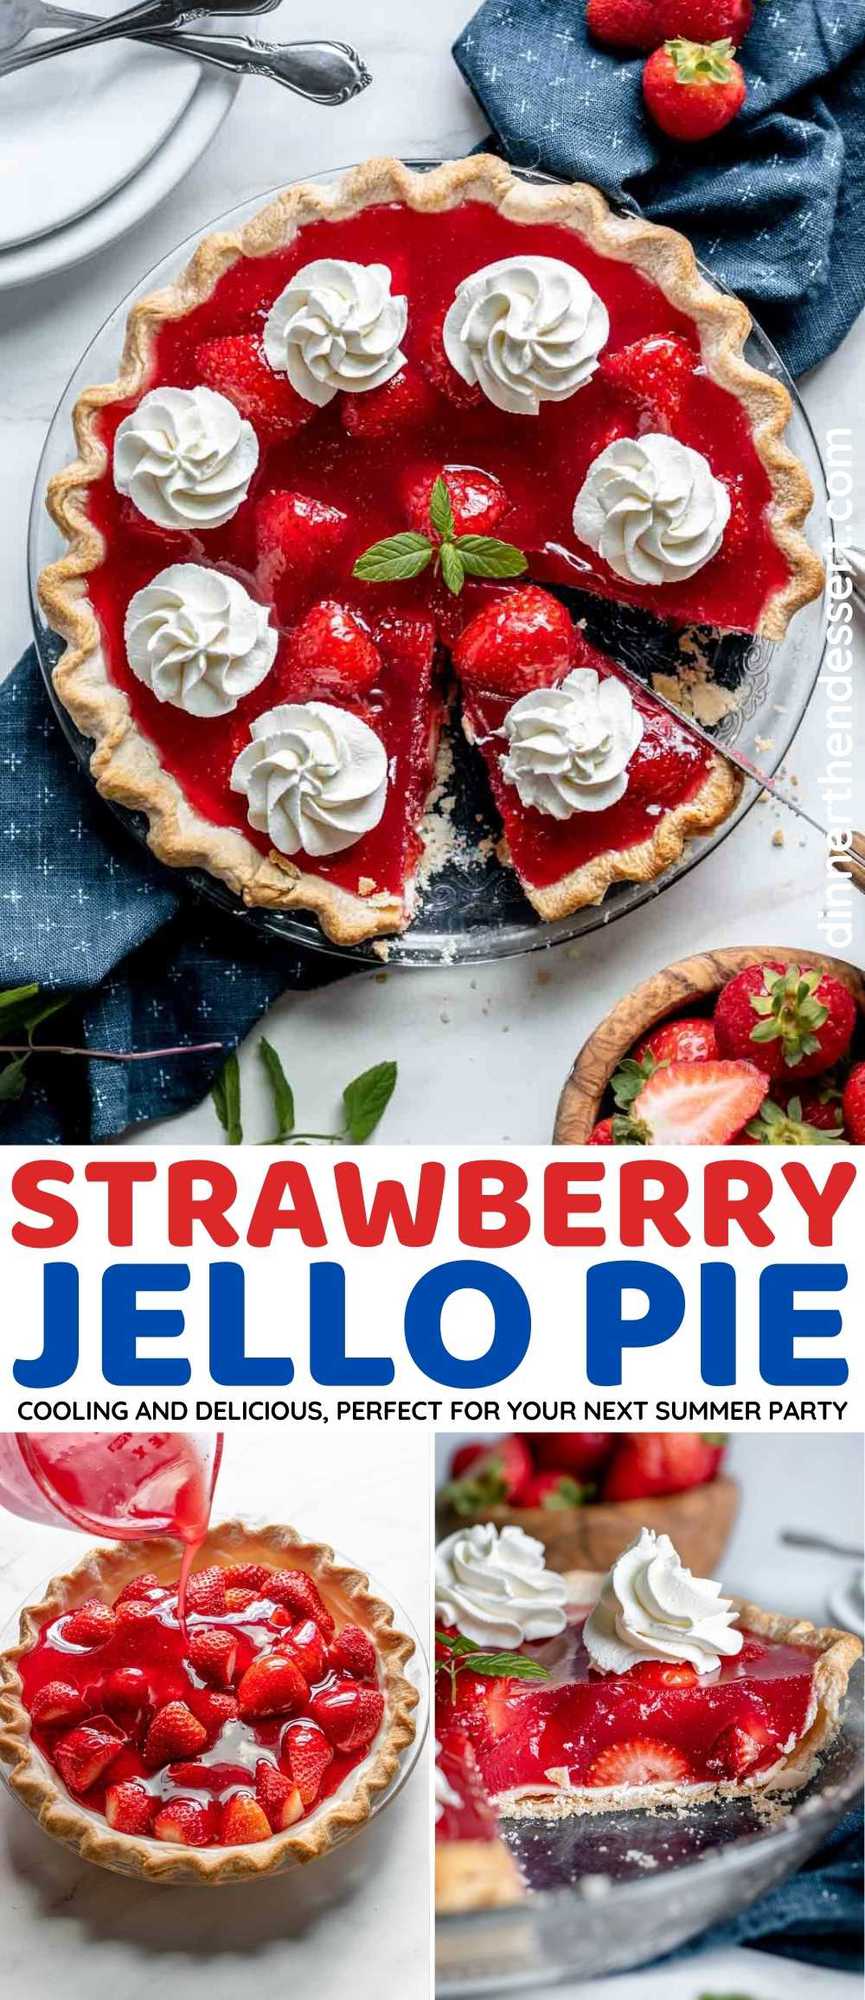 Strawberry Jello Pie collage